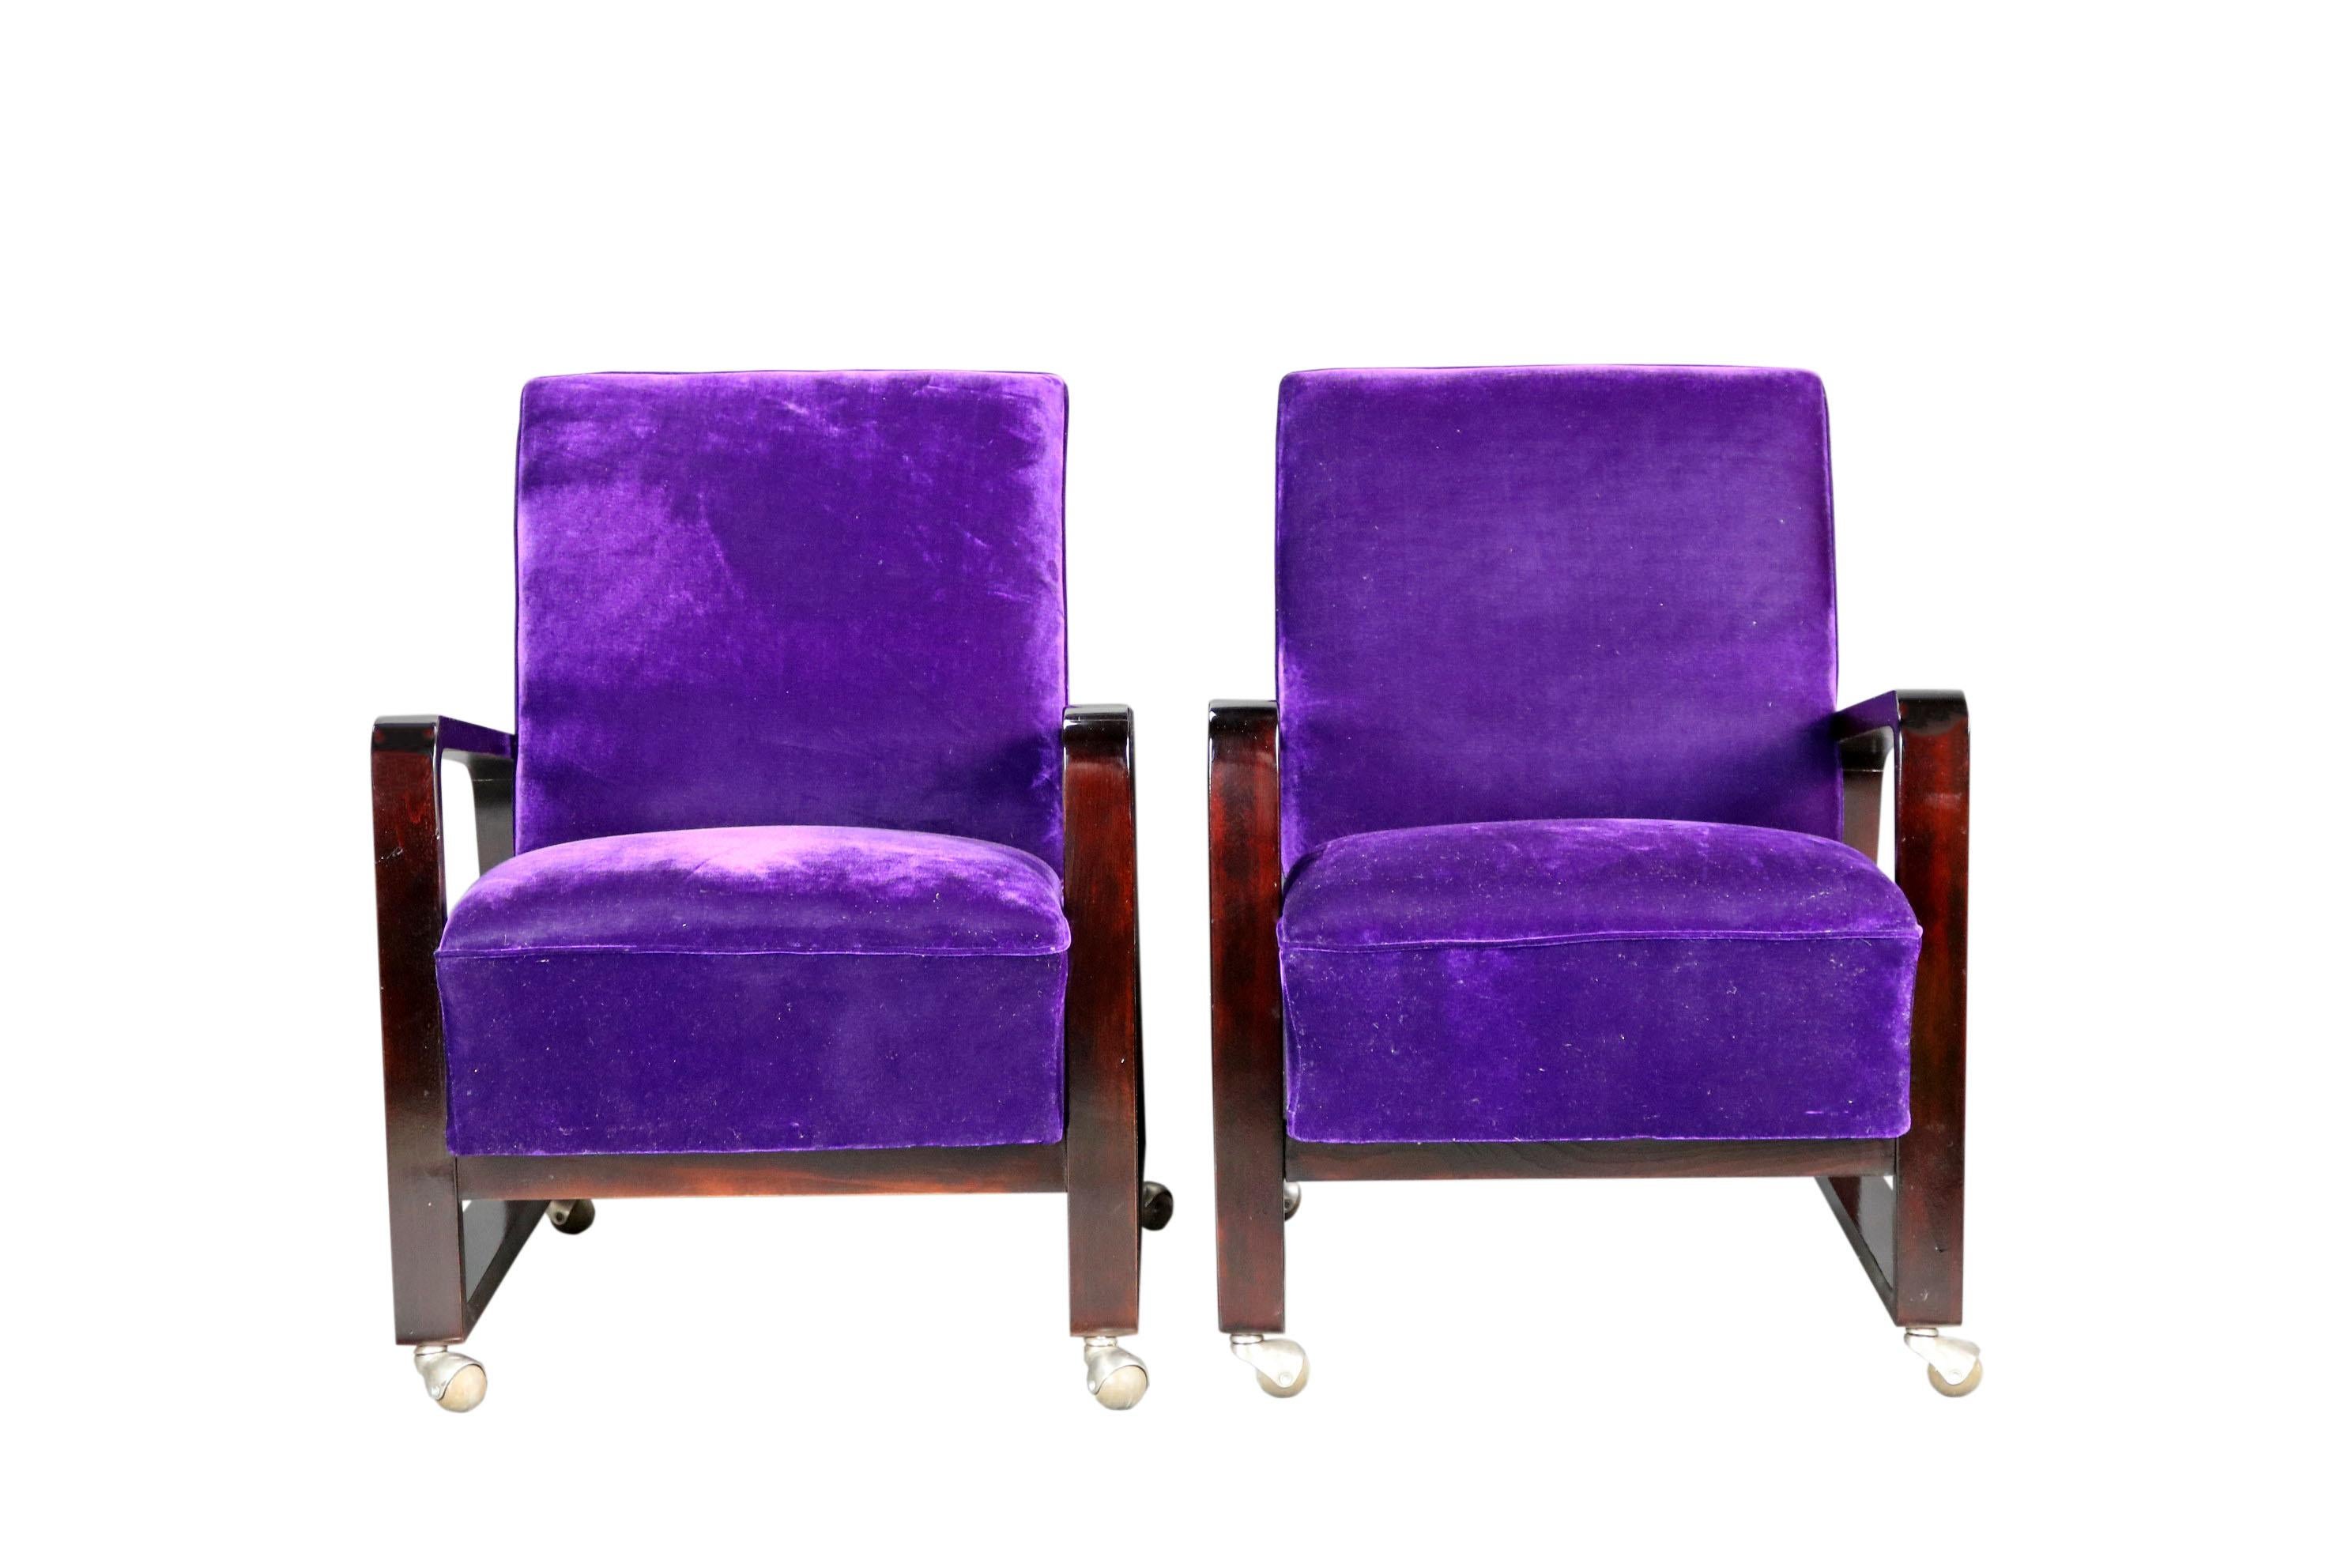 Un élégant ensemble de fauteuils Art déco. Les roulettes sont d'origine, le bois est restauré et la chaise a été retapissée. Il est doté d'une élégante sellerie violet foncé, qui s'intégrera dans n'importe quel intérieur luxueux.